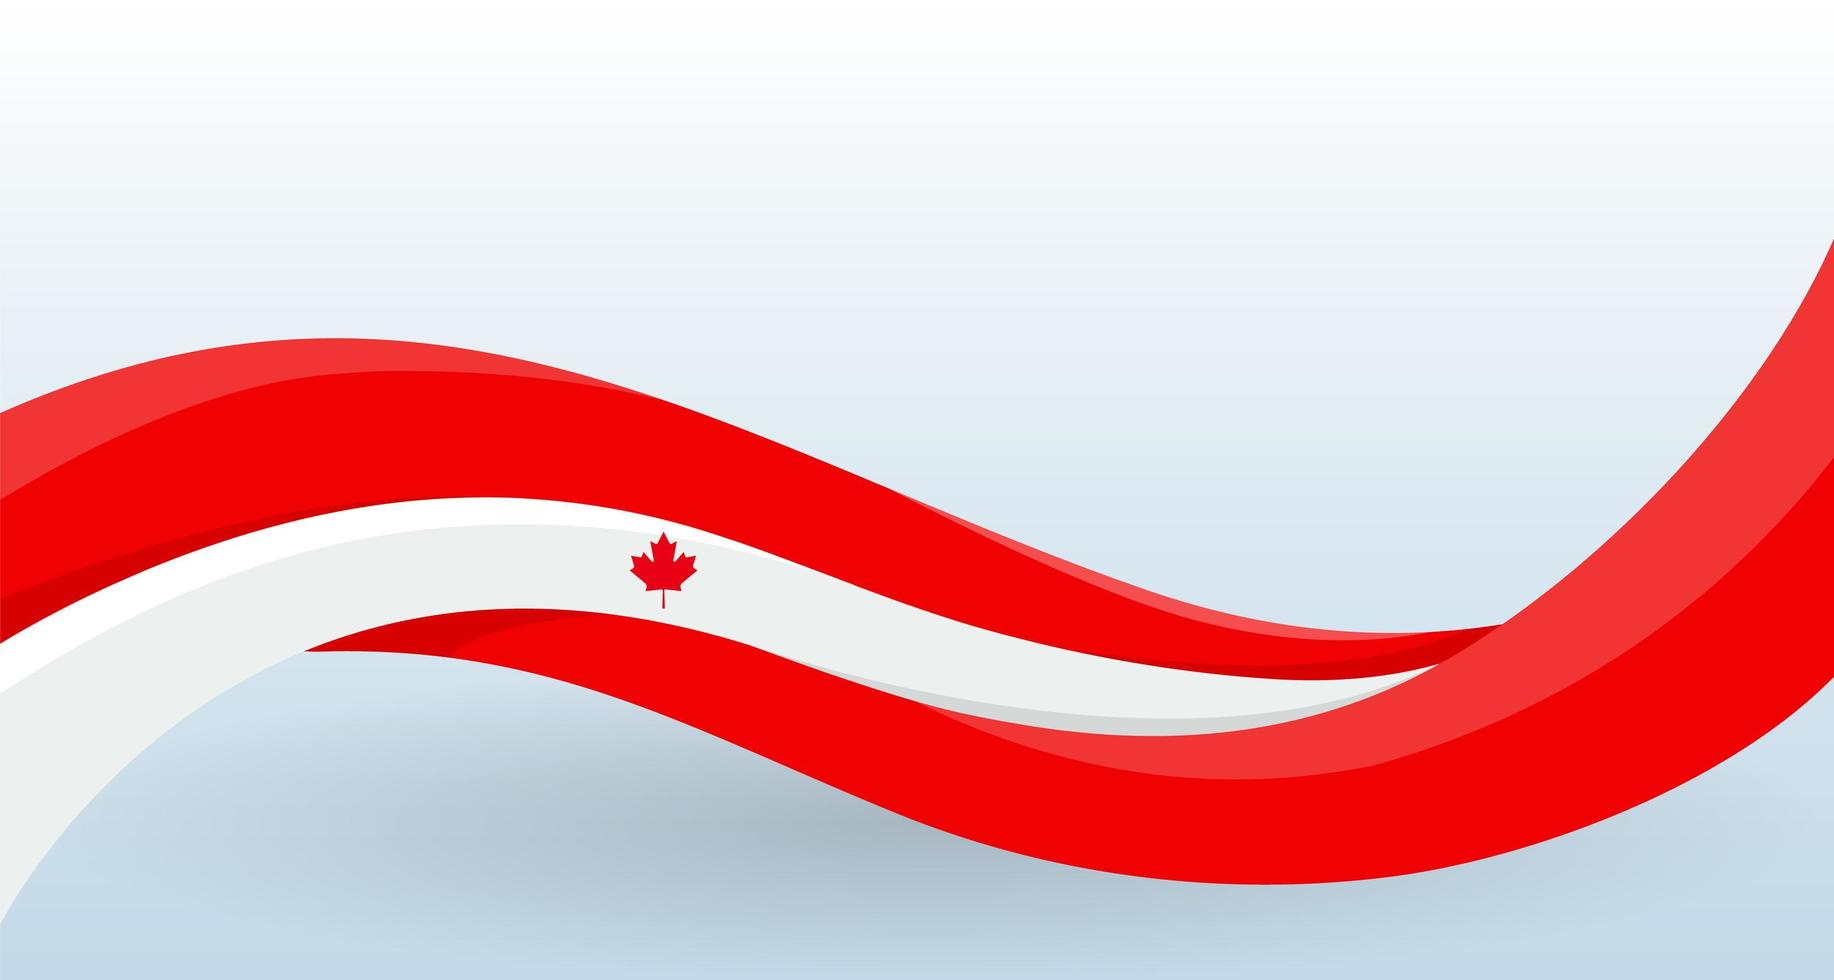 Canada agitant le drapeau national. forme inhabituelle moderne. modèle de conception pour la décoration de flyer et carte, affiche, bannière et logo. illustration vectorielle isolée. vecteur